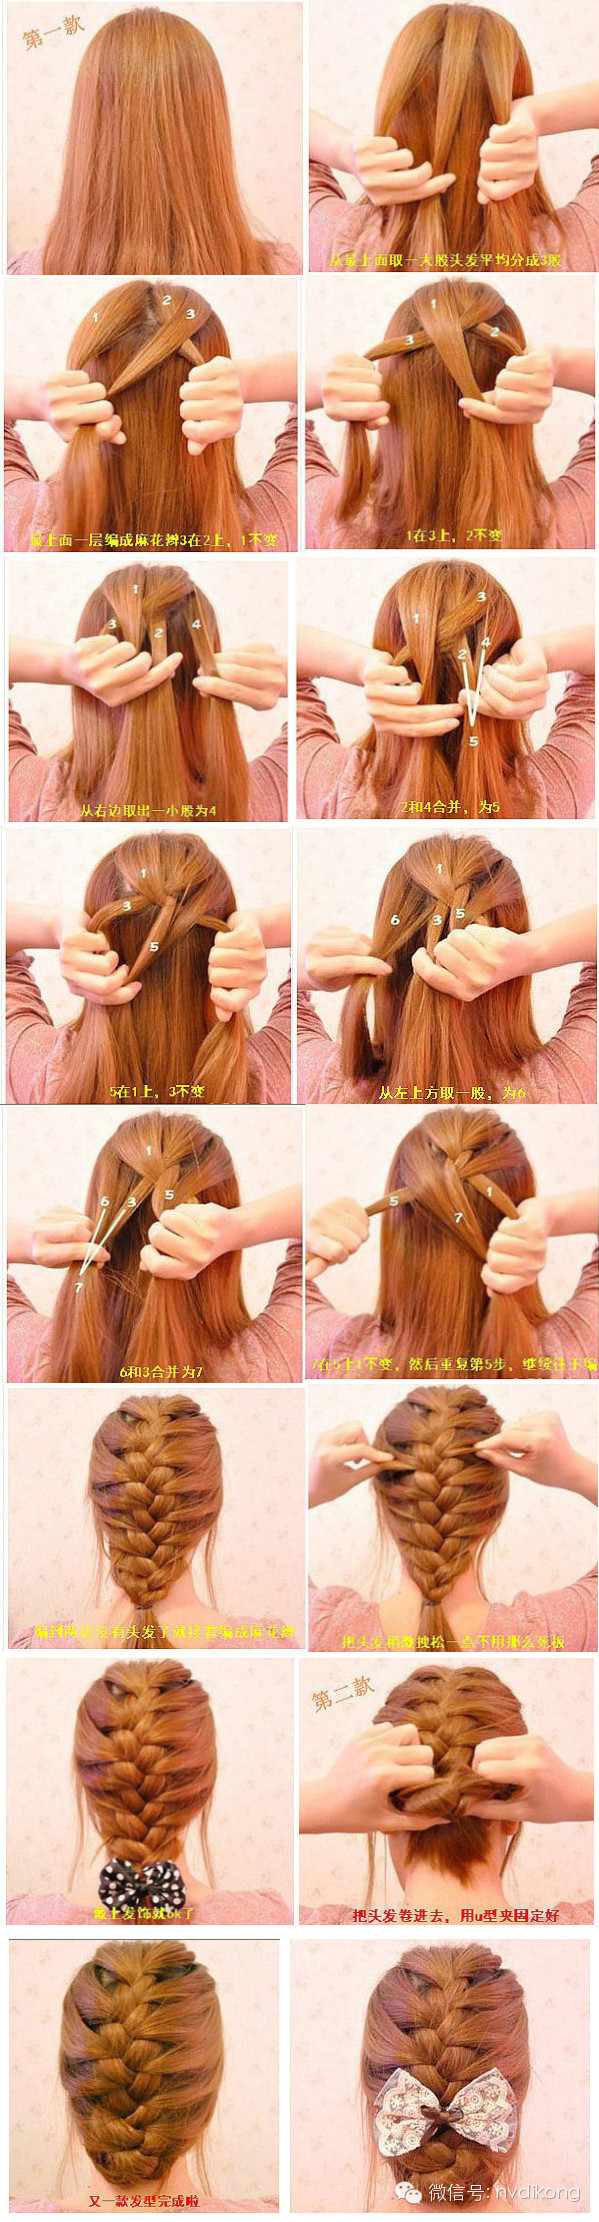 扎头发方法100种图片